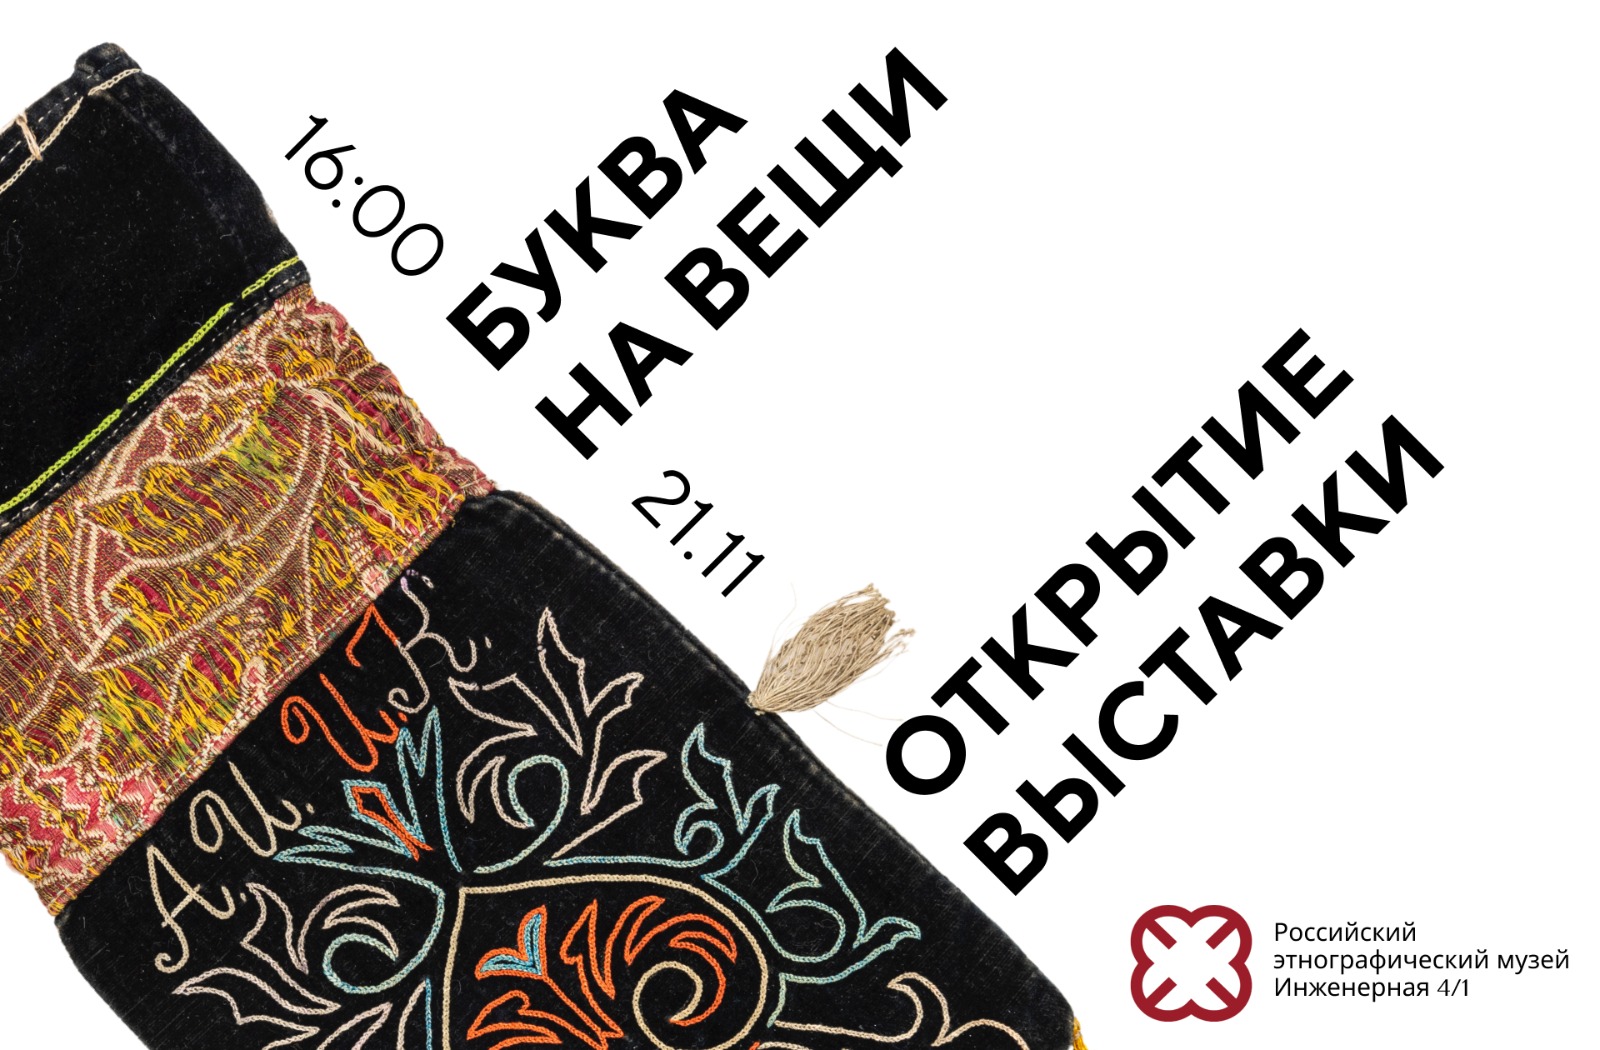 Текст как искусство: в Российском этнографическом музее открывается выставка «Буква на вещи»